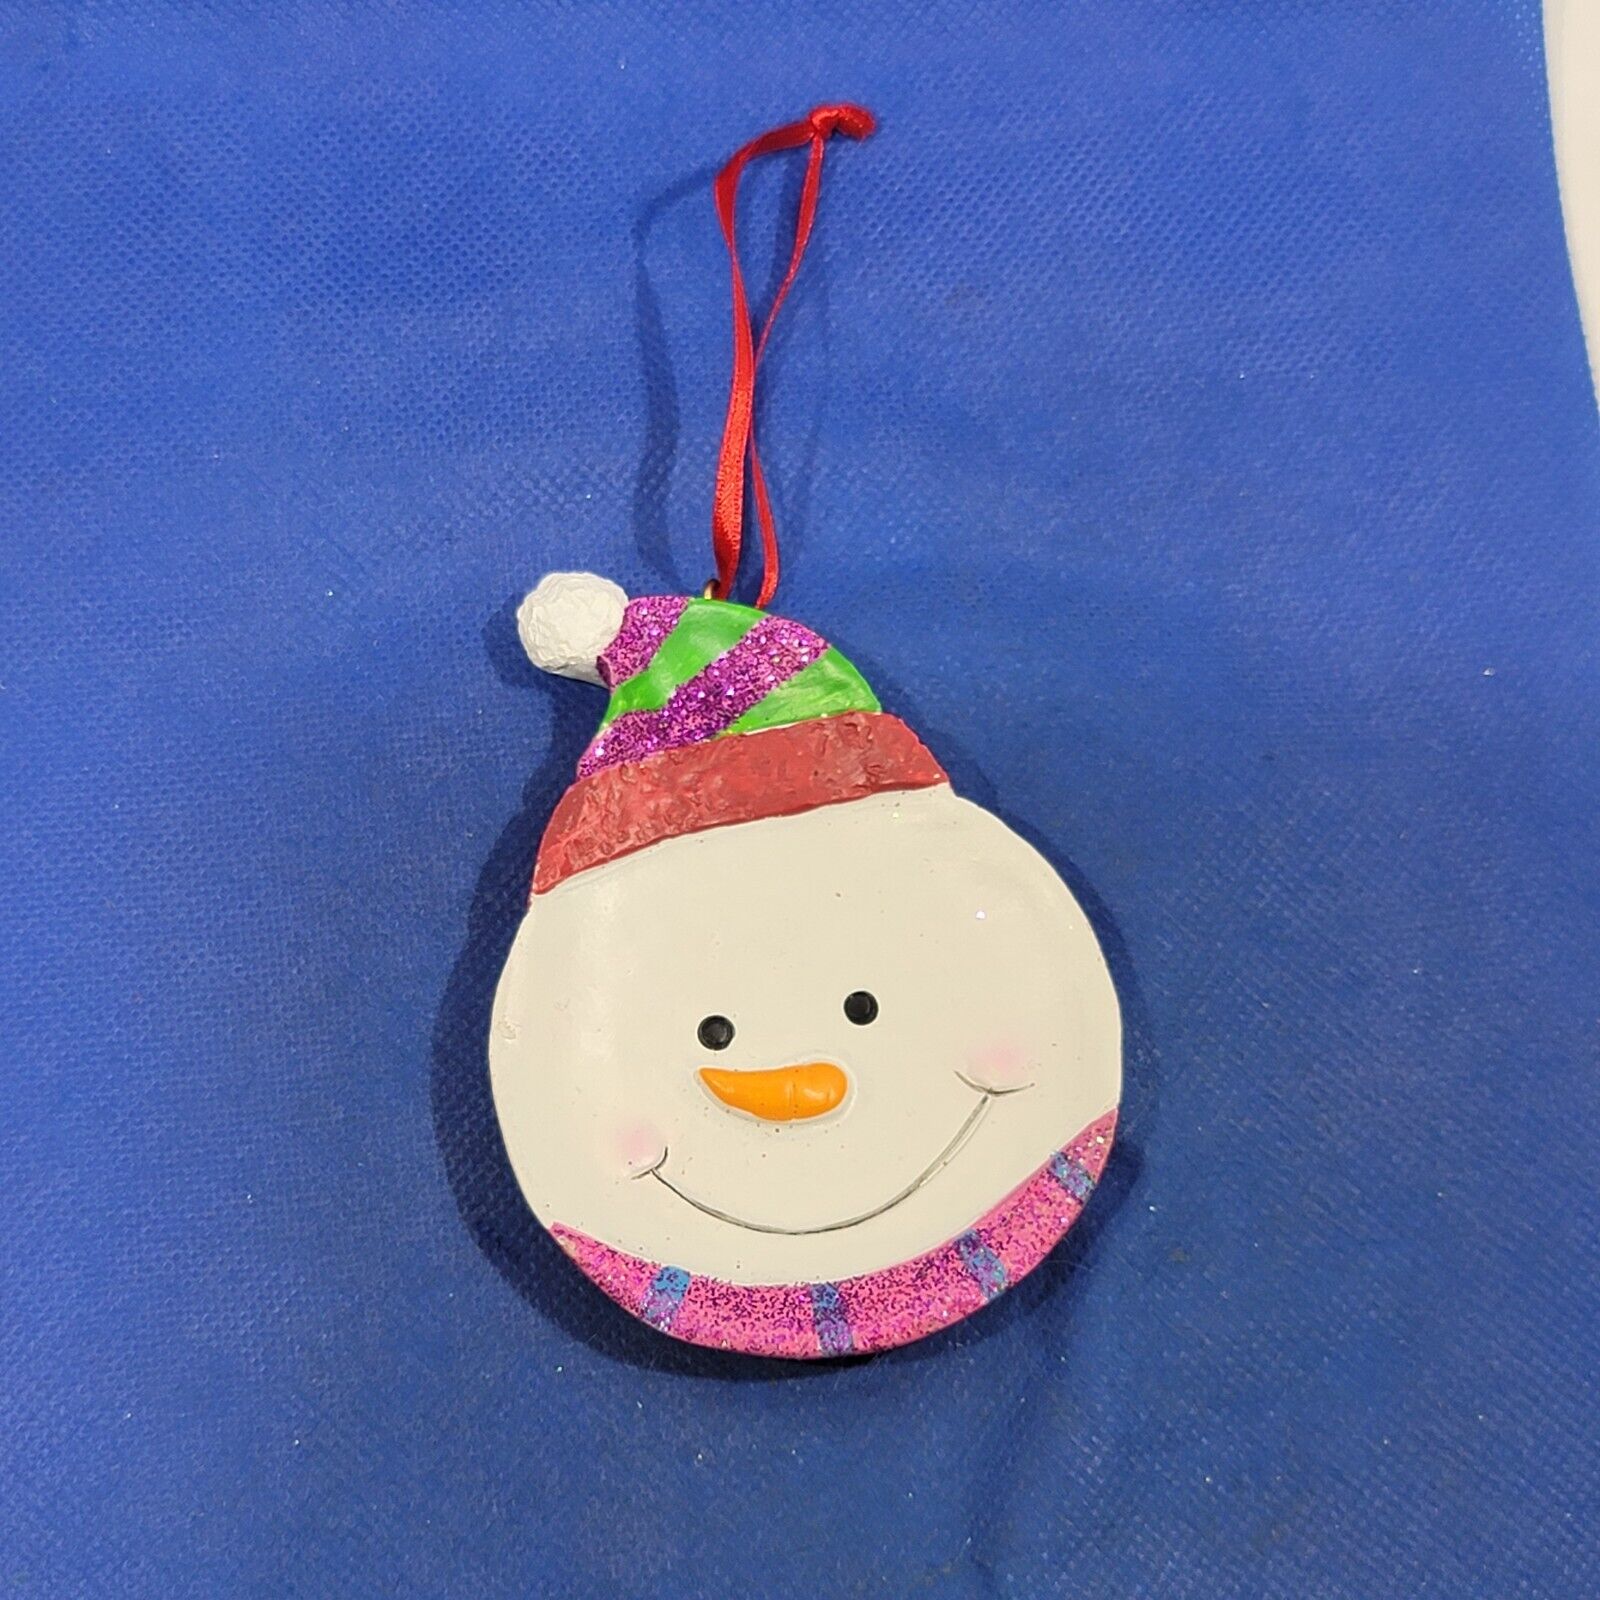 Christmas tree Ornament Snowman Resin Holiday Décor